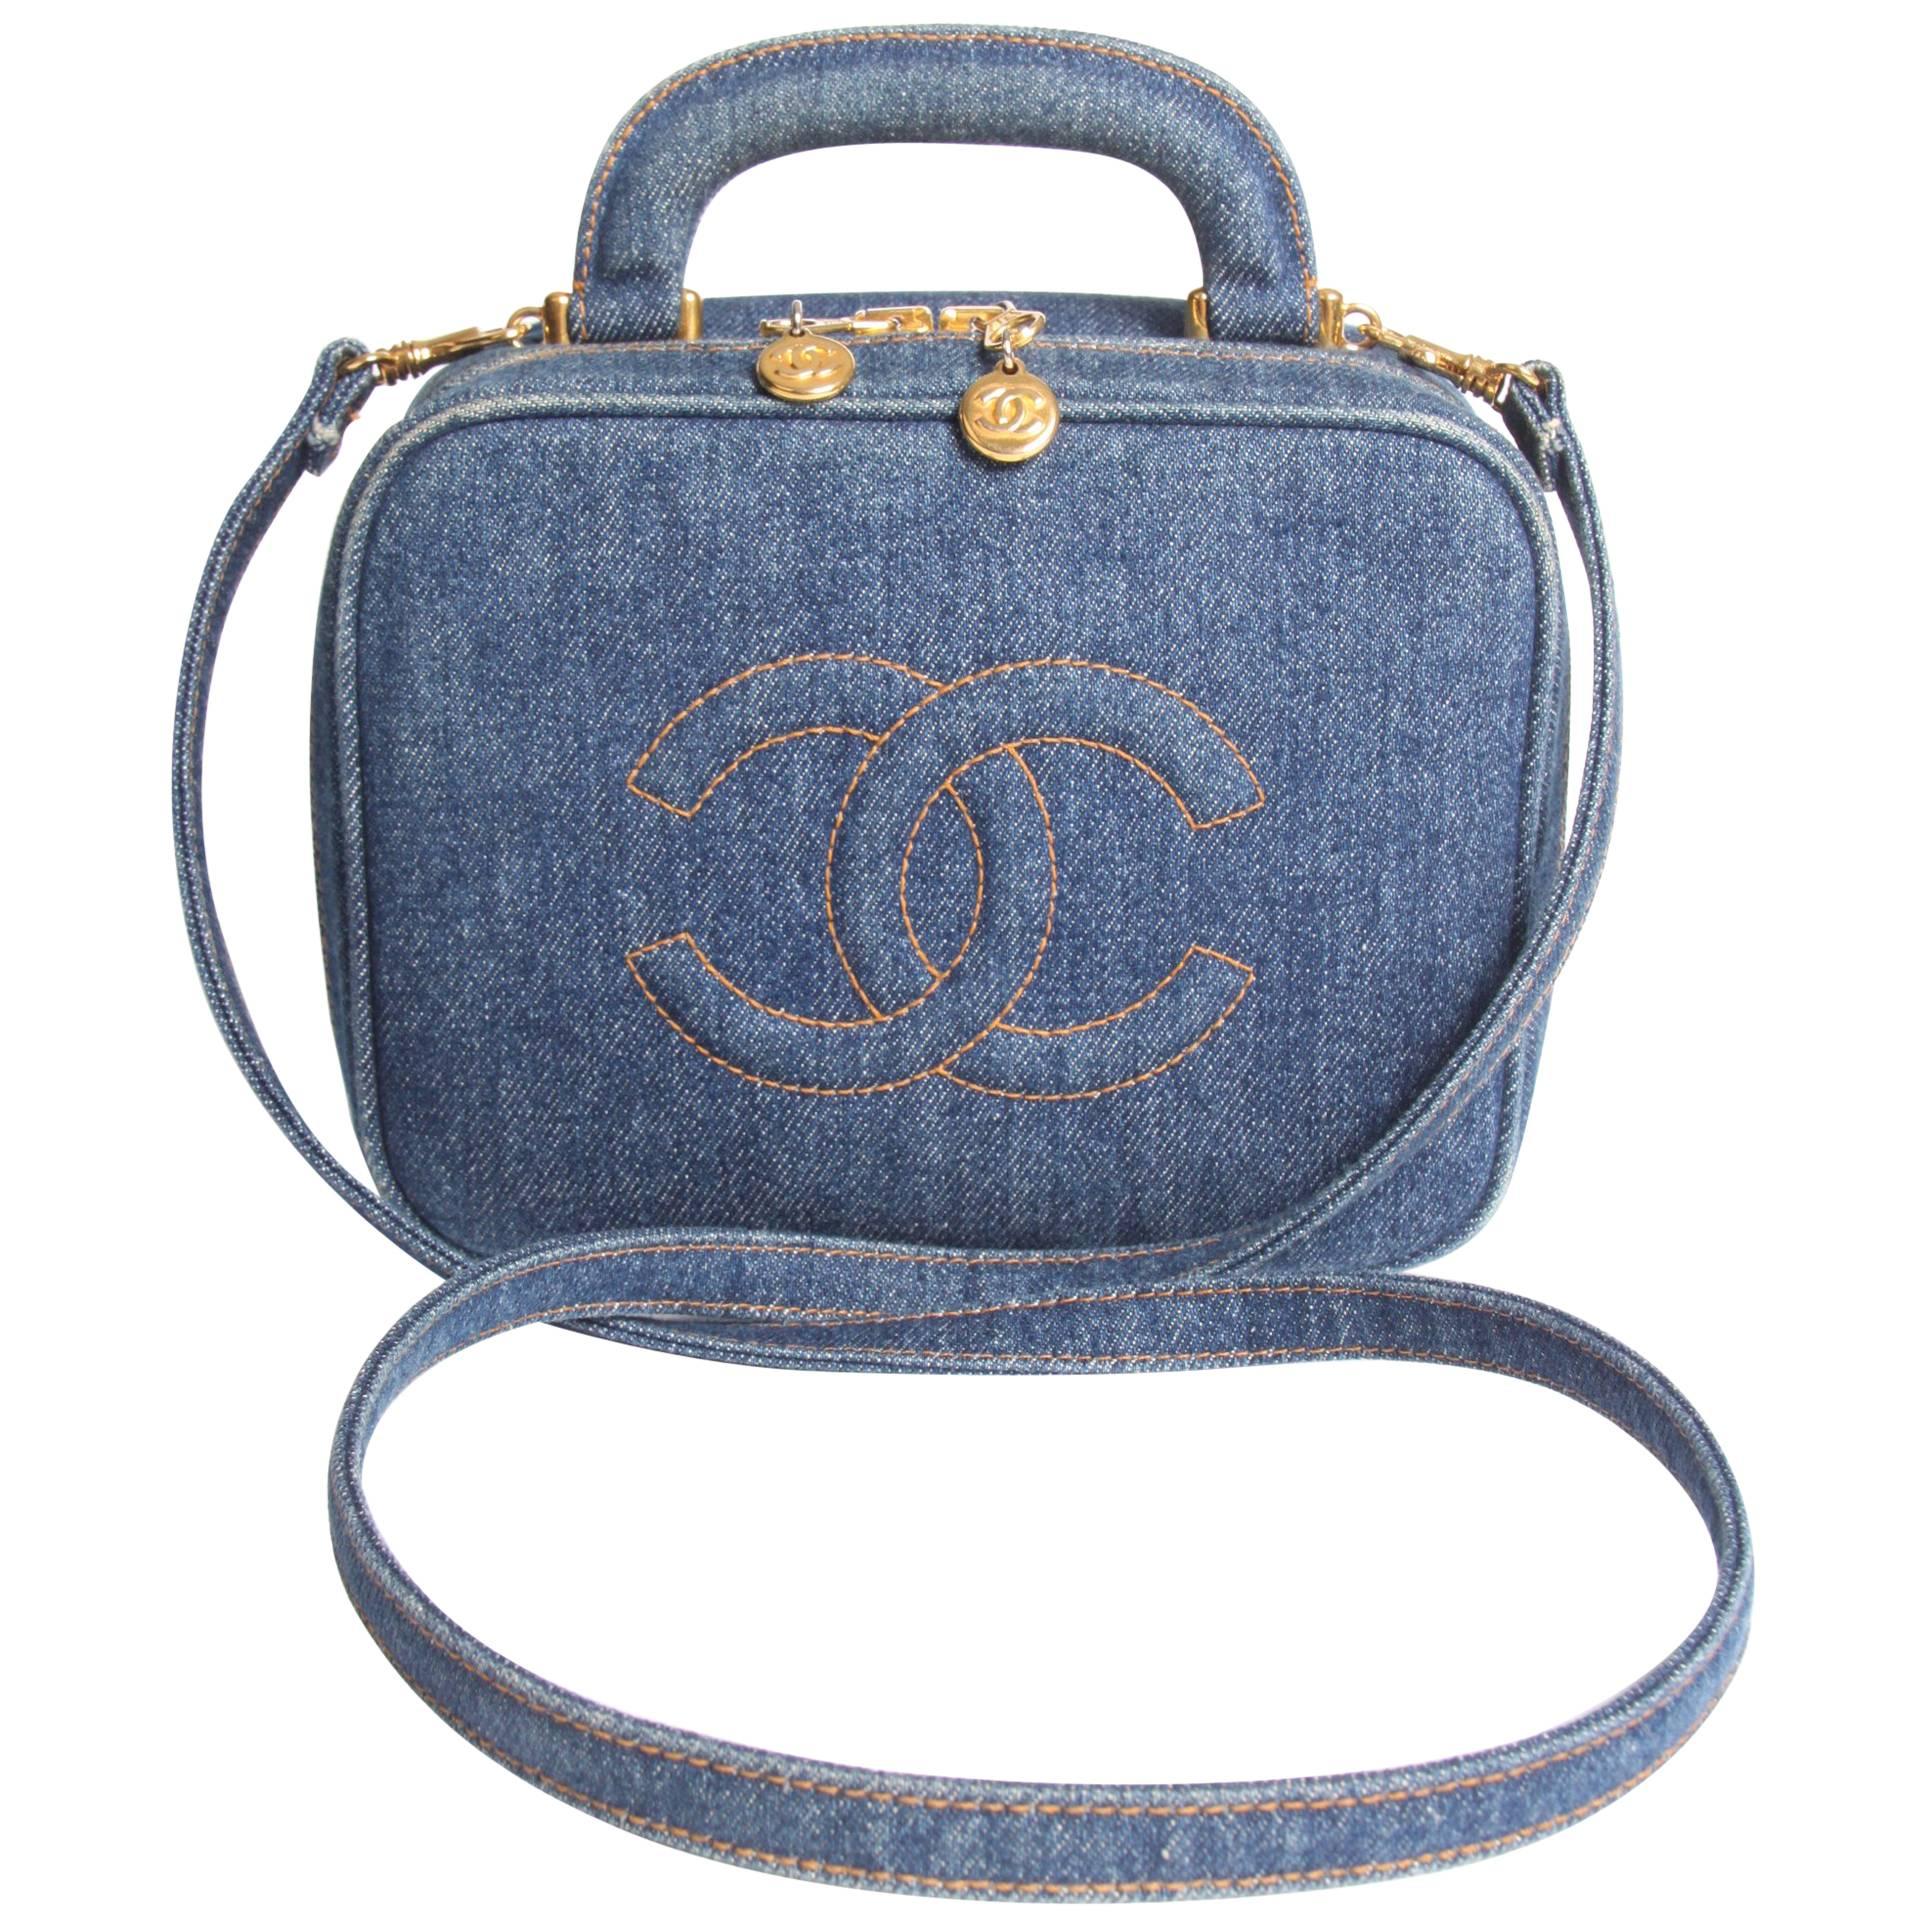       Chanel Vanity Bag Denim Vintage - blue 1996